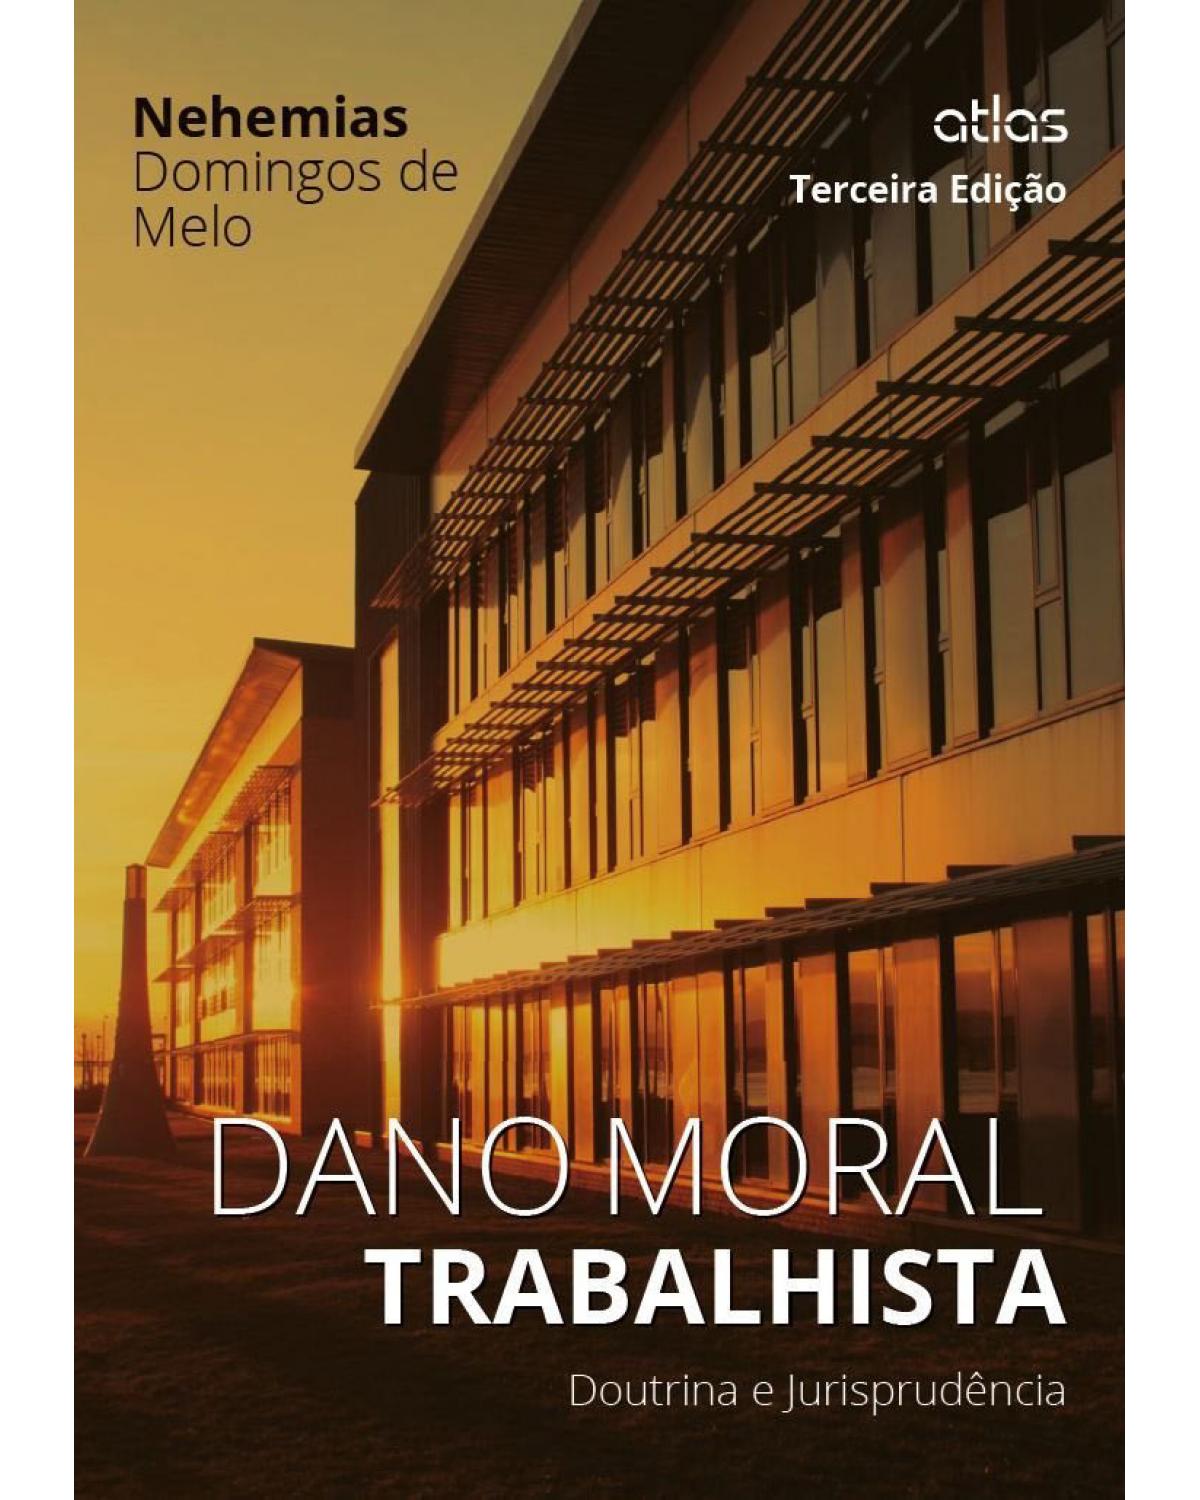 Dano moral trabalhista - Doutrina e jurisprudência - 3ª Edição | 2015